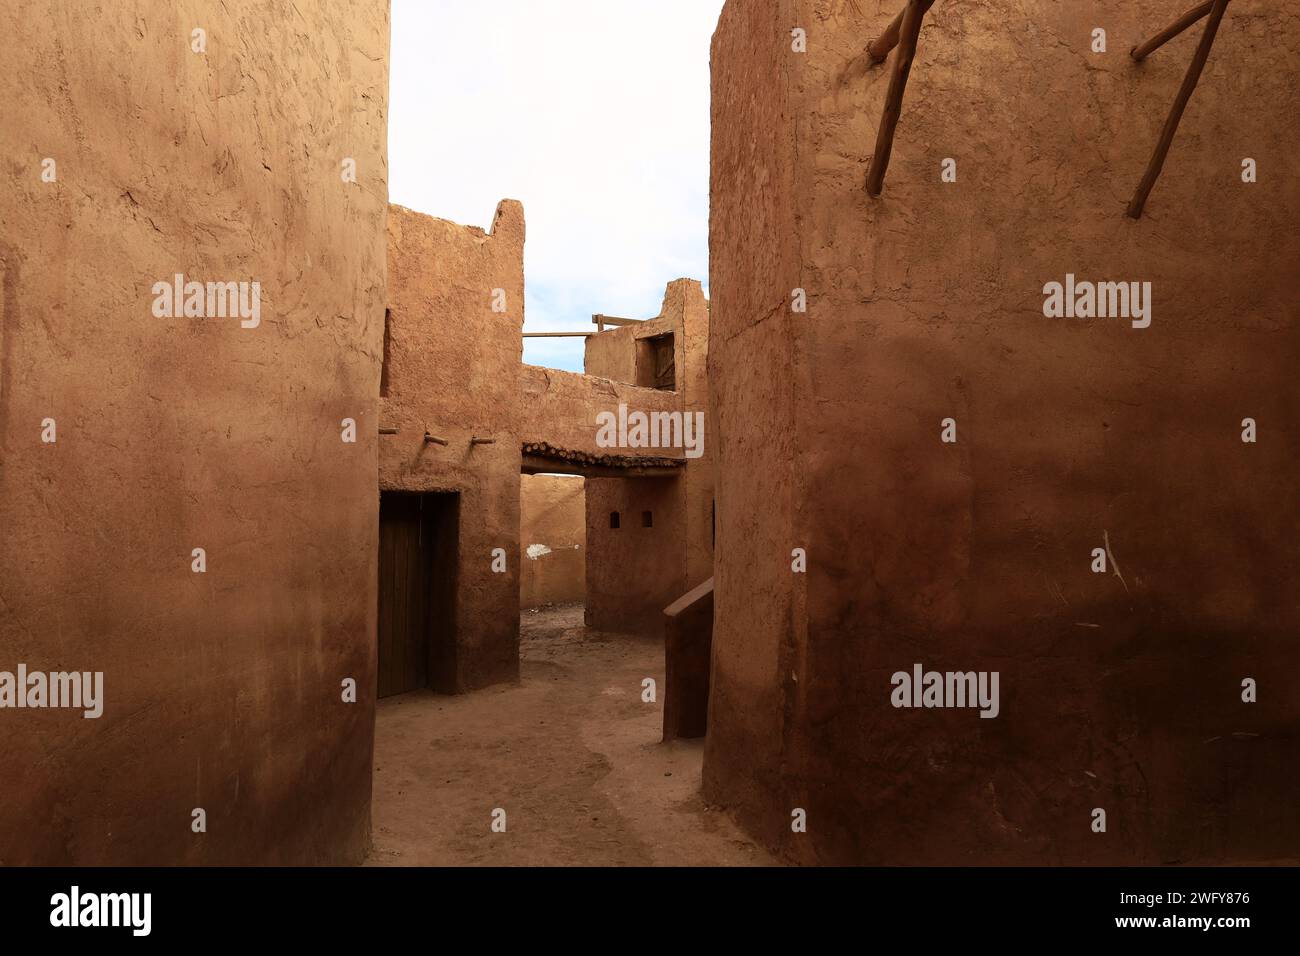 Atlas Studios es un estudio de cine situado a 5 kilómetros al oeste de la ciudad de Ouarzazate en Marruecos. Foto de stock